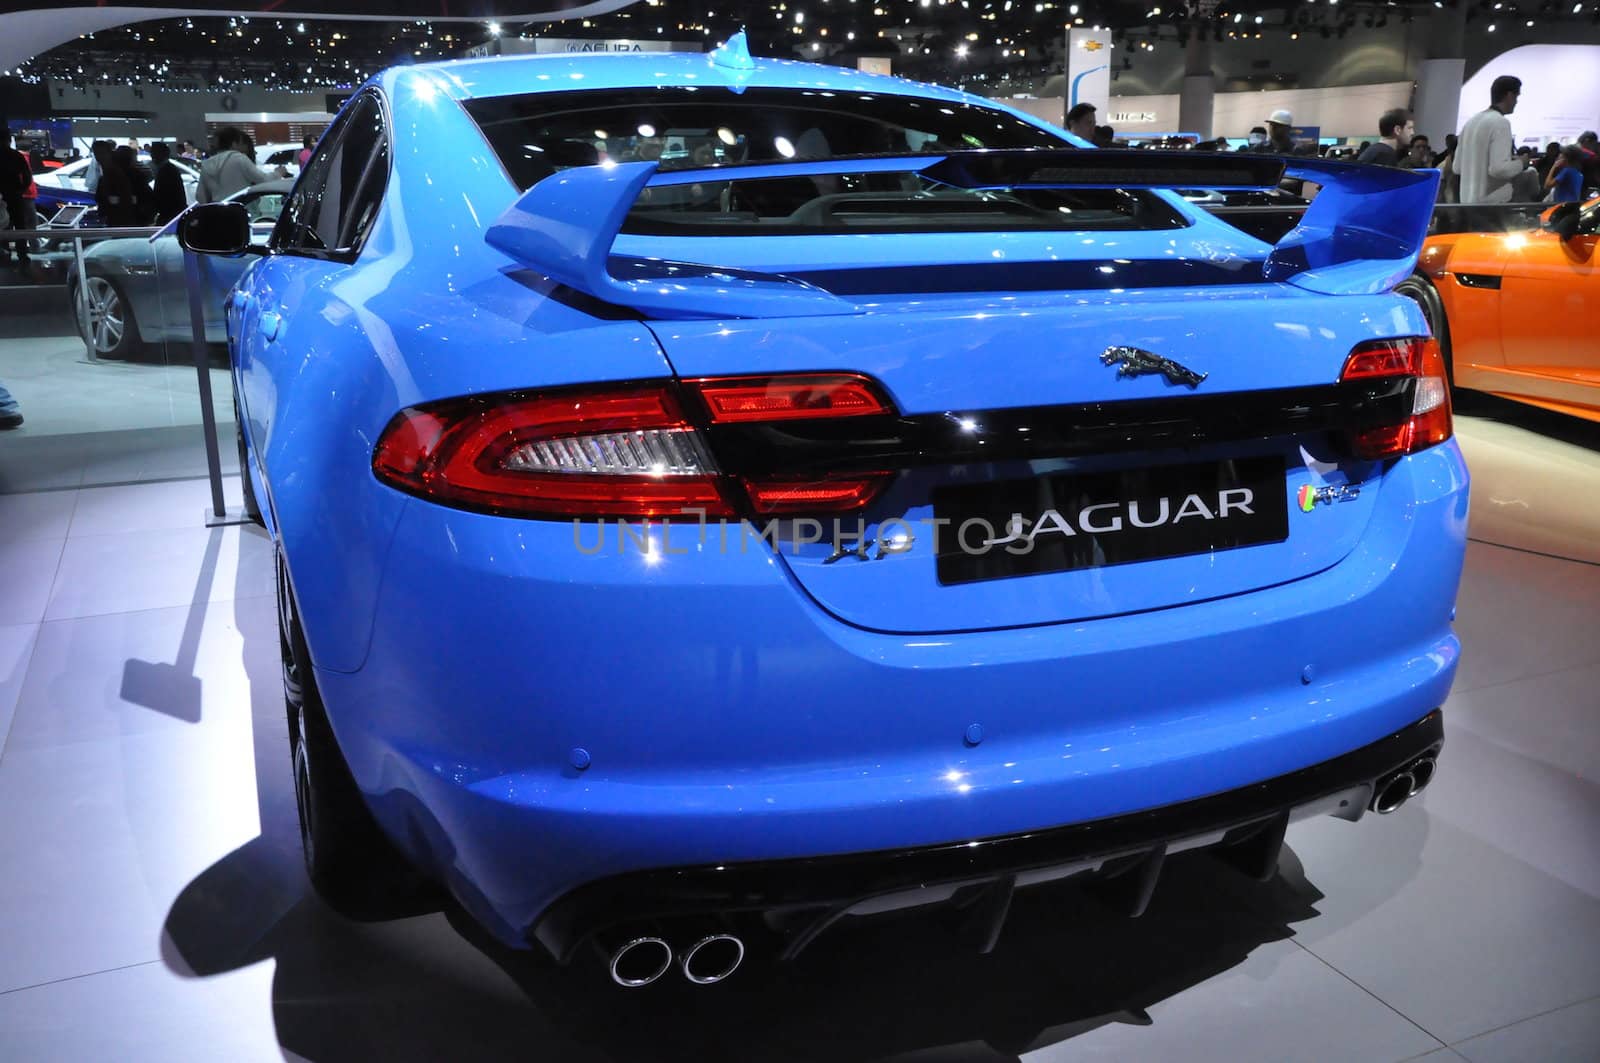 Jaguar XF by sainaniritu